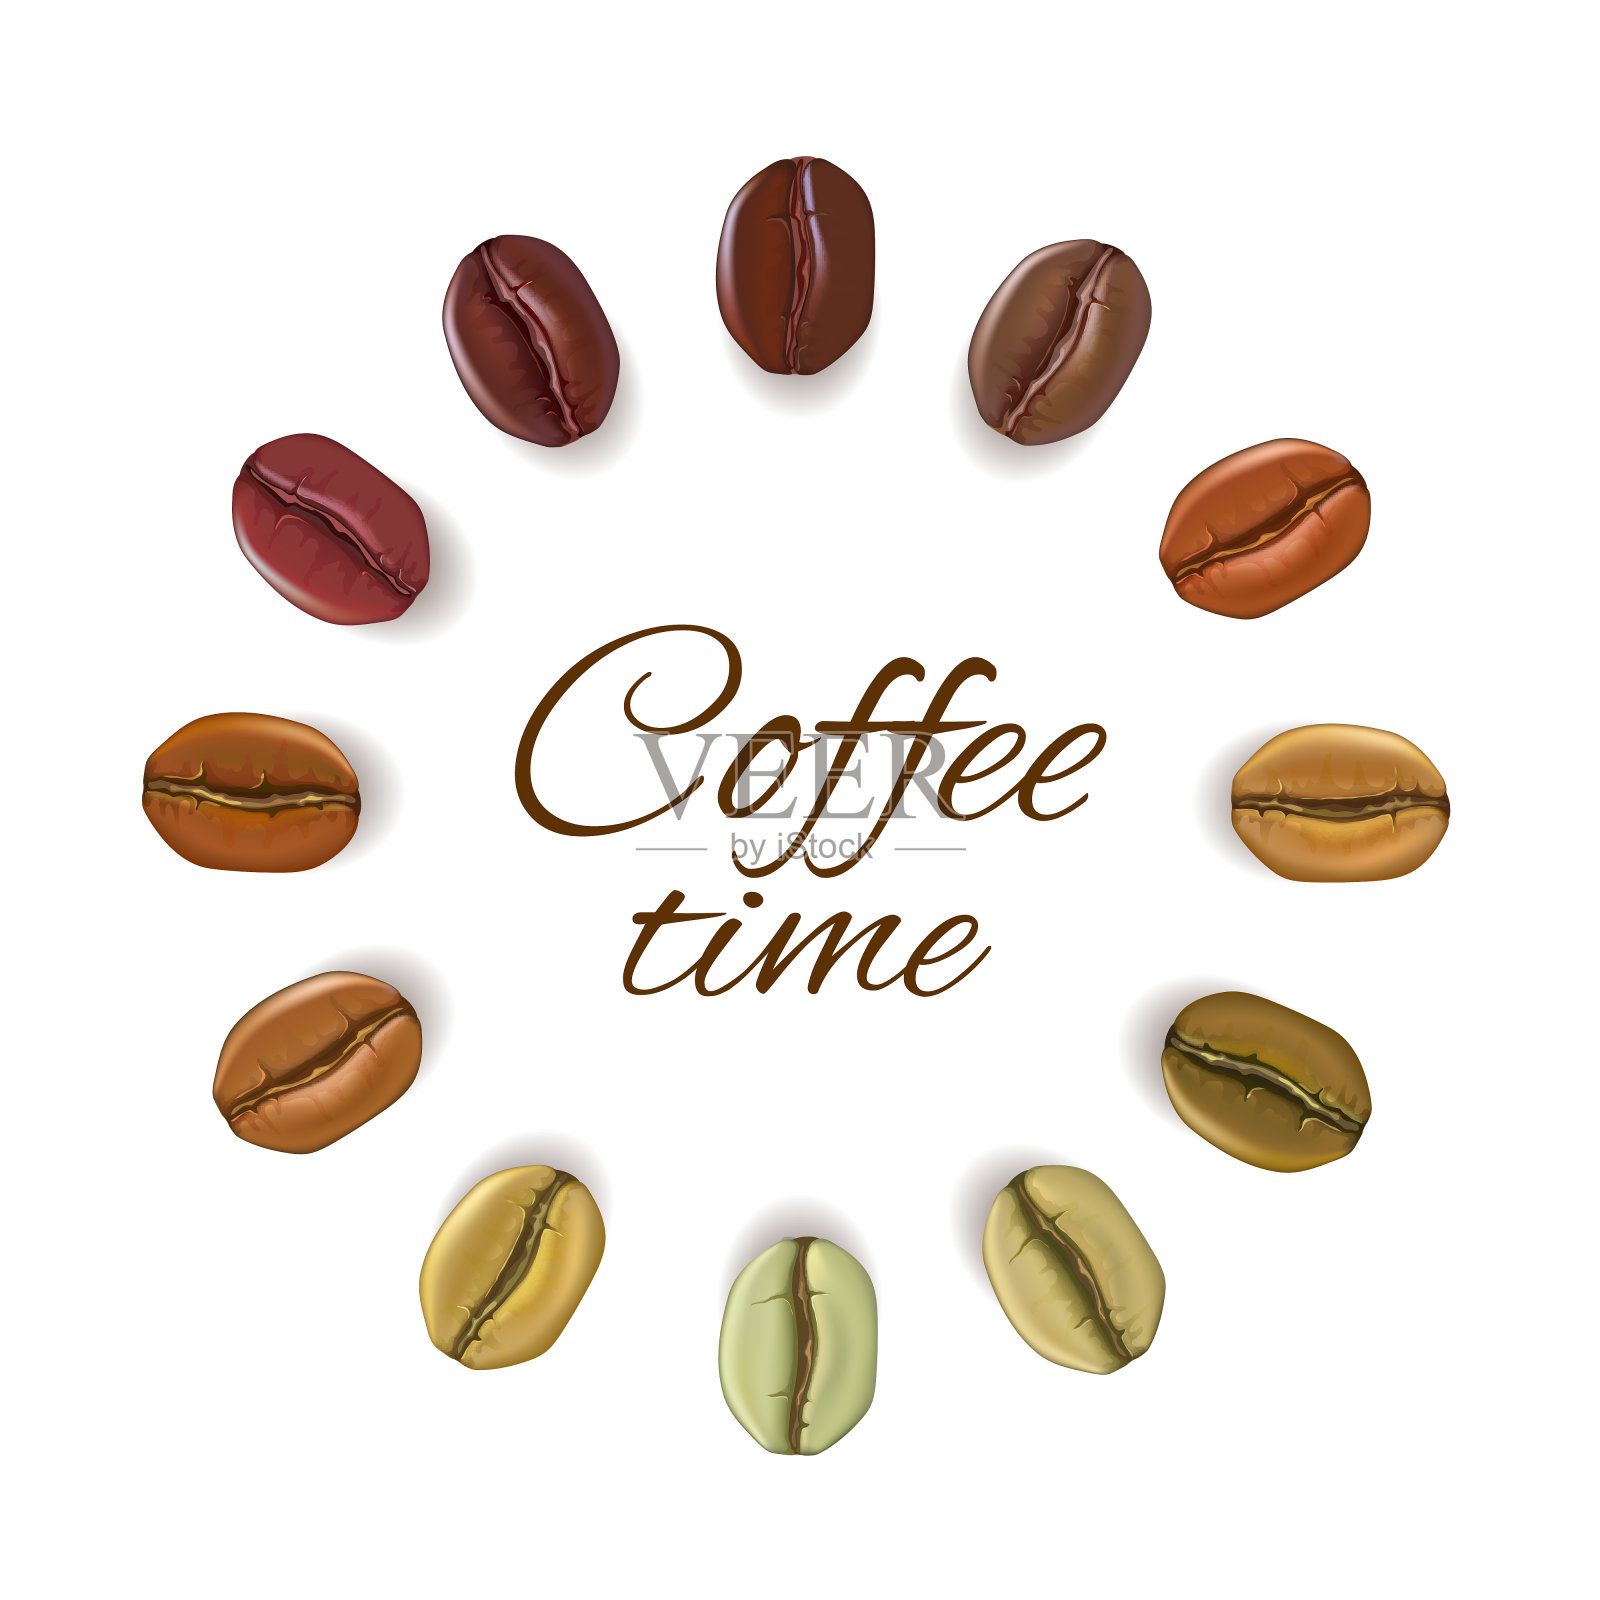 将现实的咖啡豆放在圆圈中作为文本插画图片素材